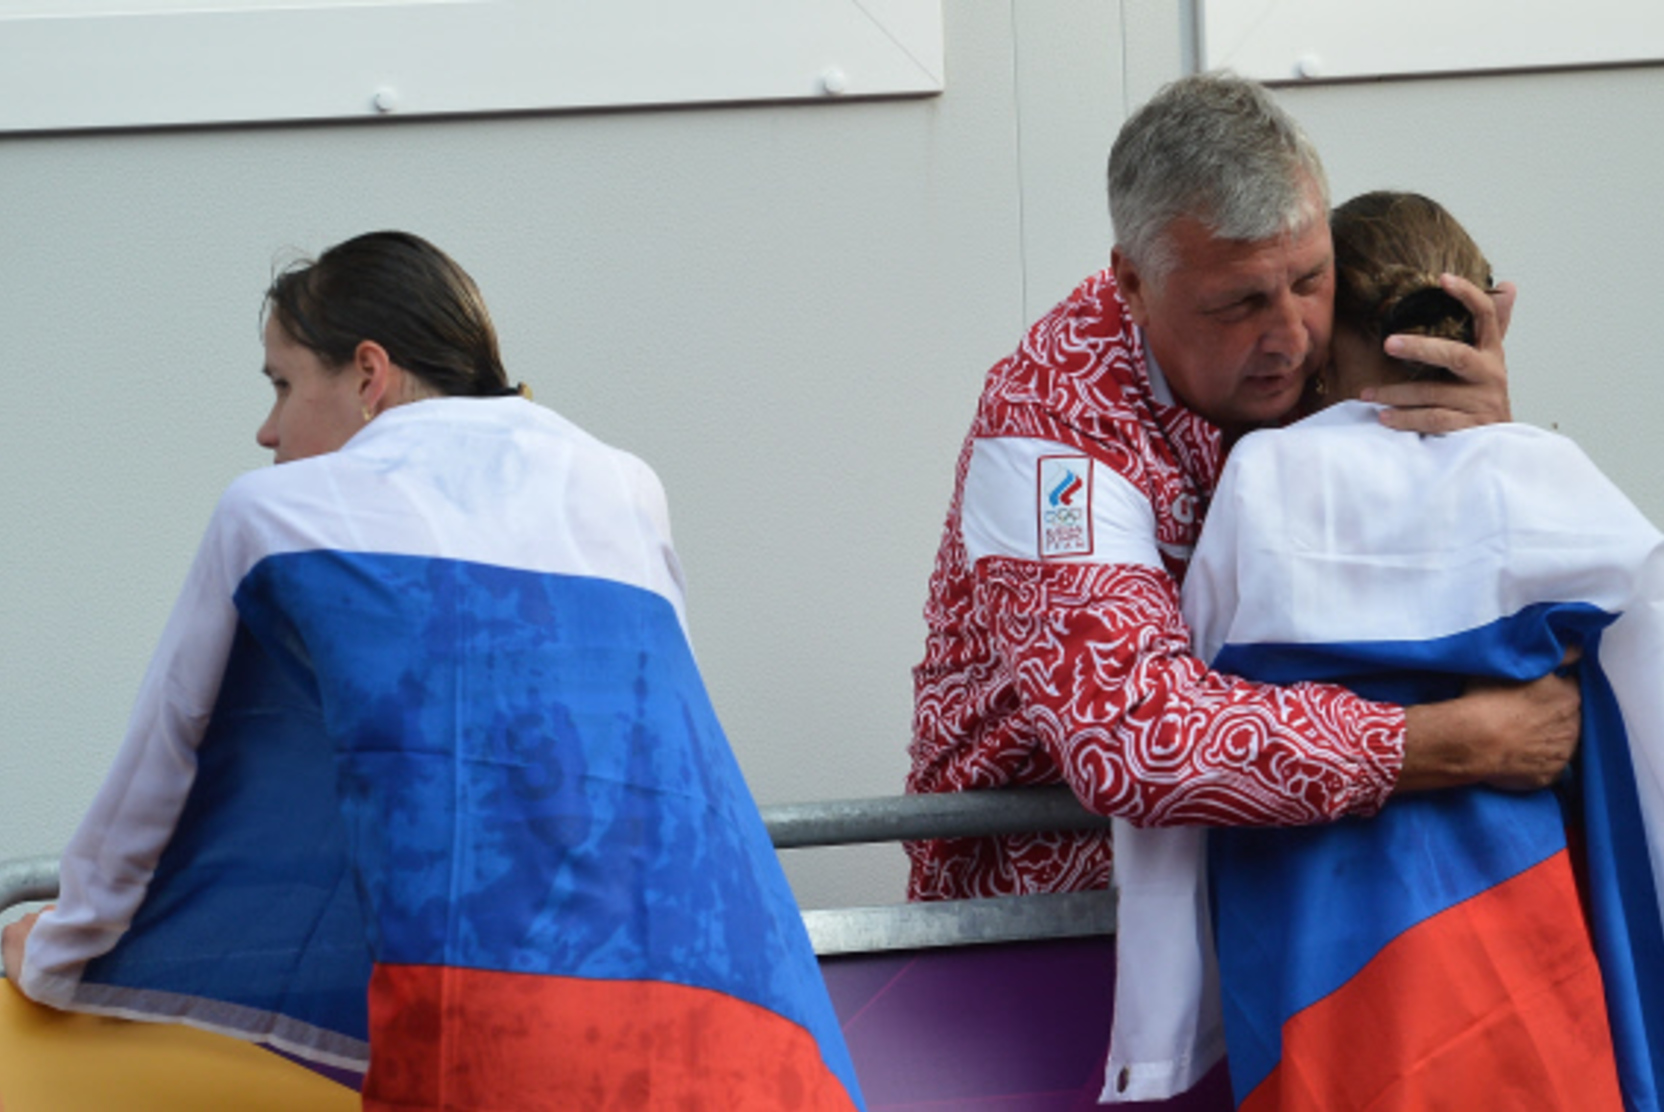 World Athletics выделит квоту российским легкоатлетам для участия в Олимпиаде в марте